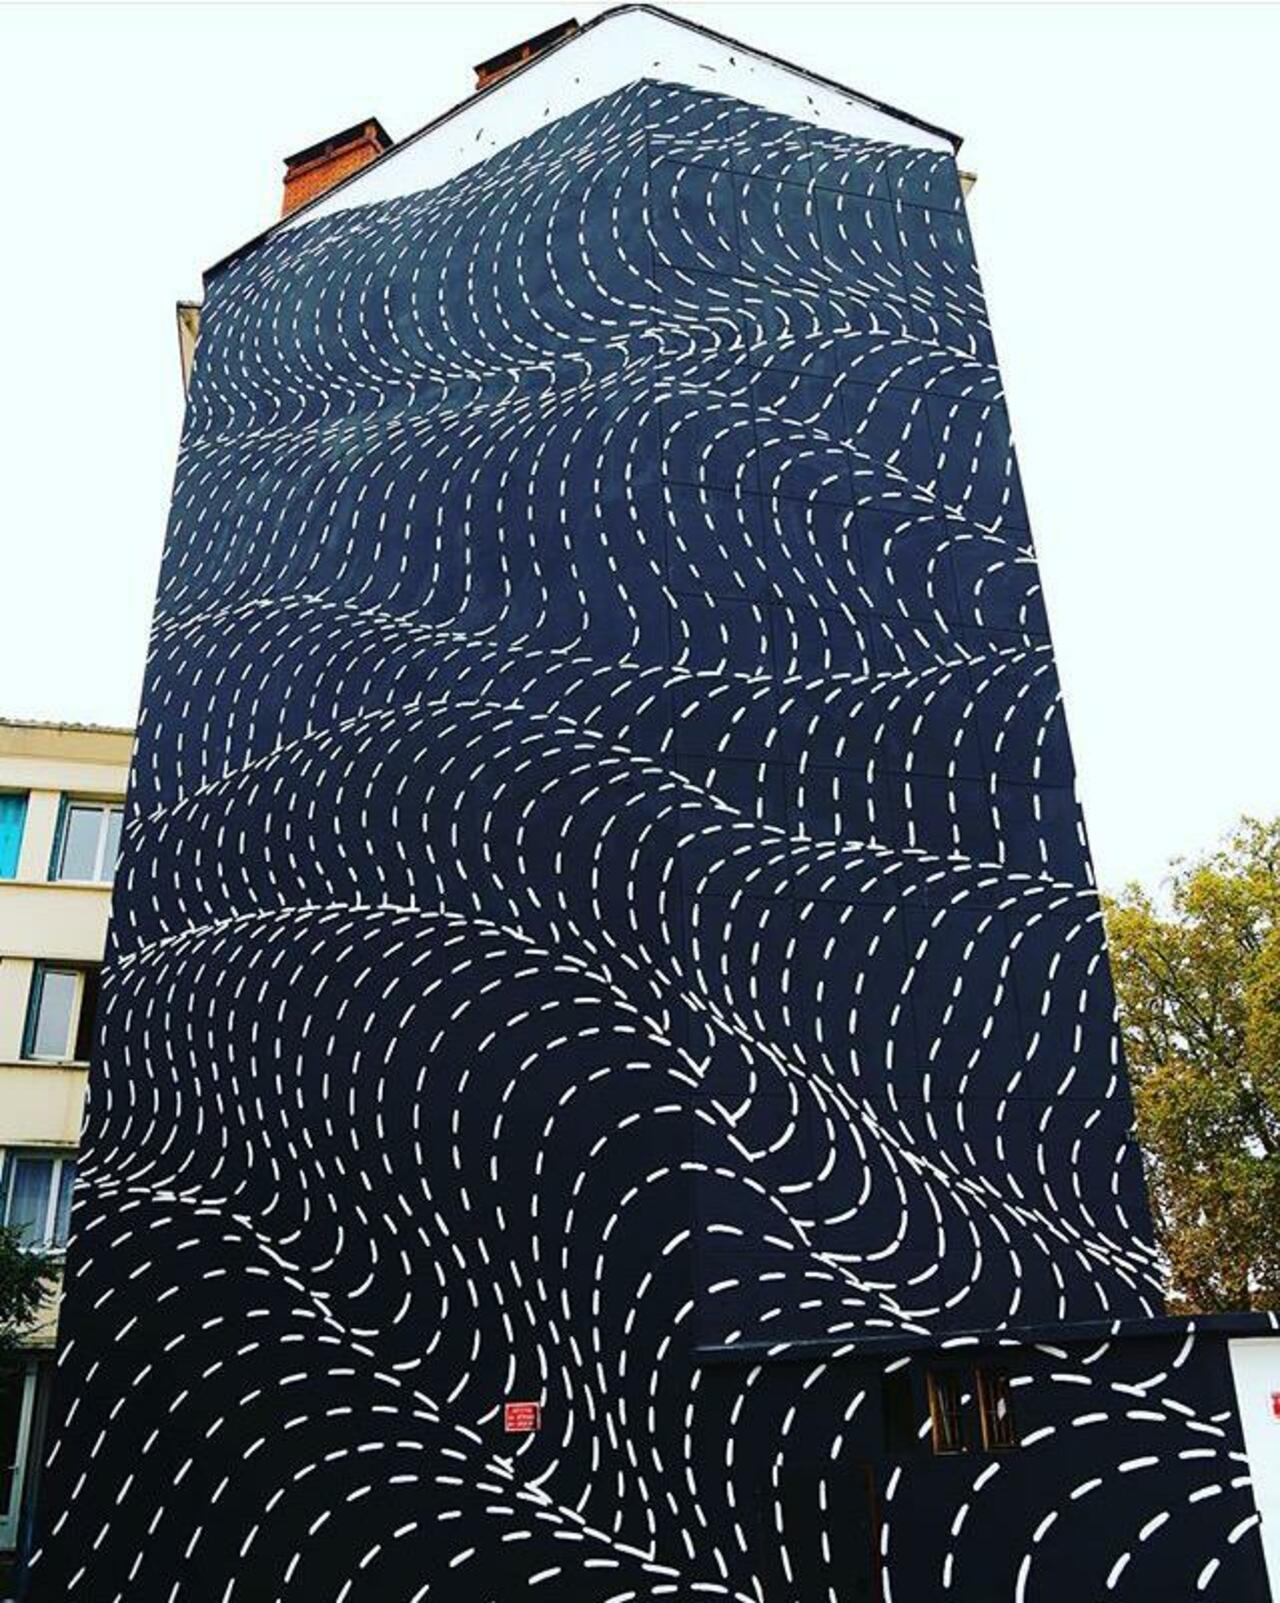 New Street Art by Brendan Monroe's for WOPS ! Festival in Toulouse, France. 

#art #graffiti #mural #streetart https://t.co/mBdlZJNt2V